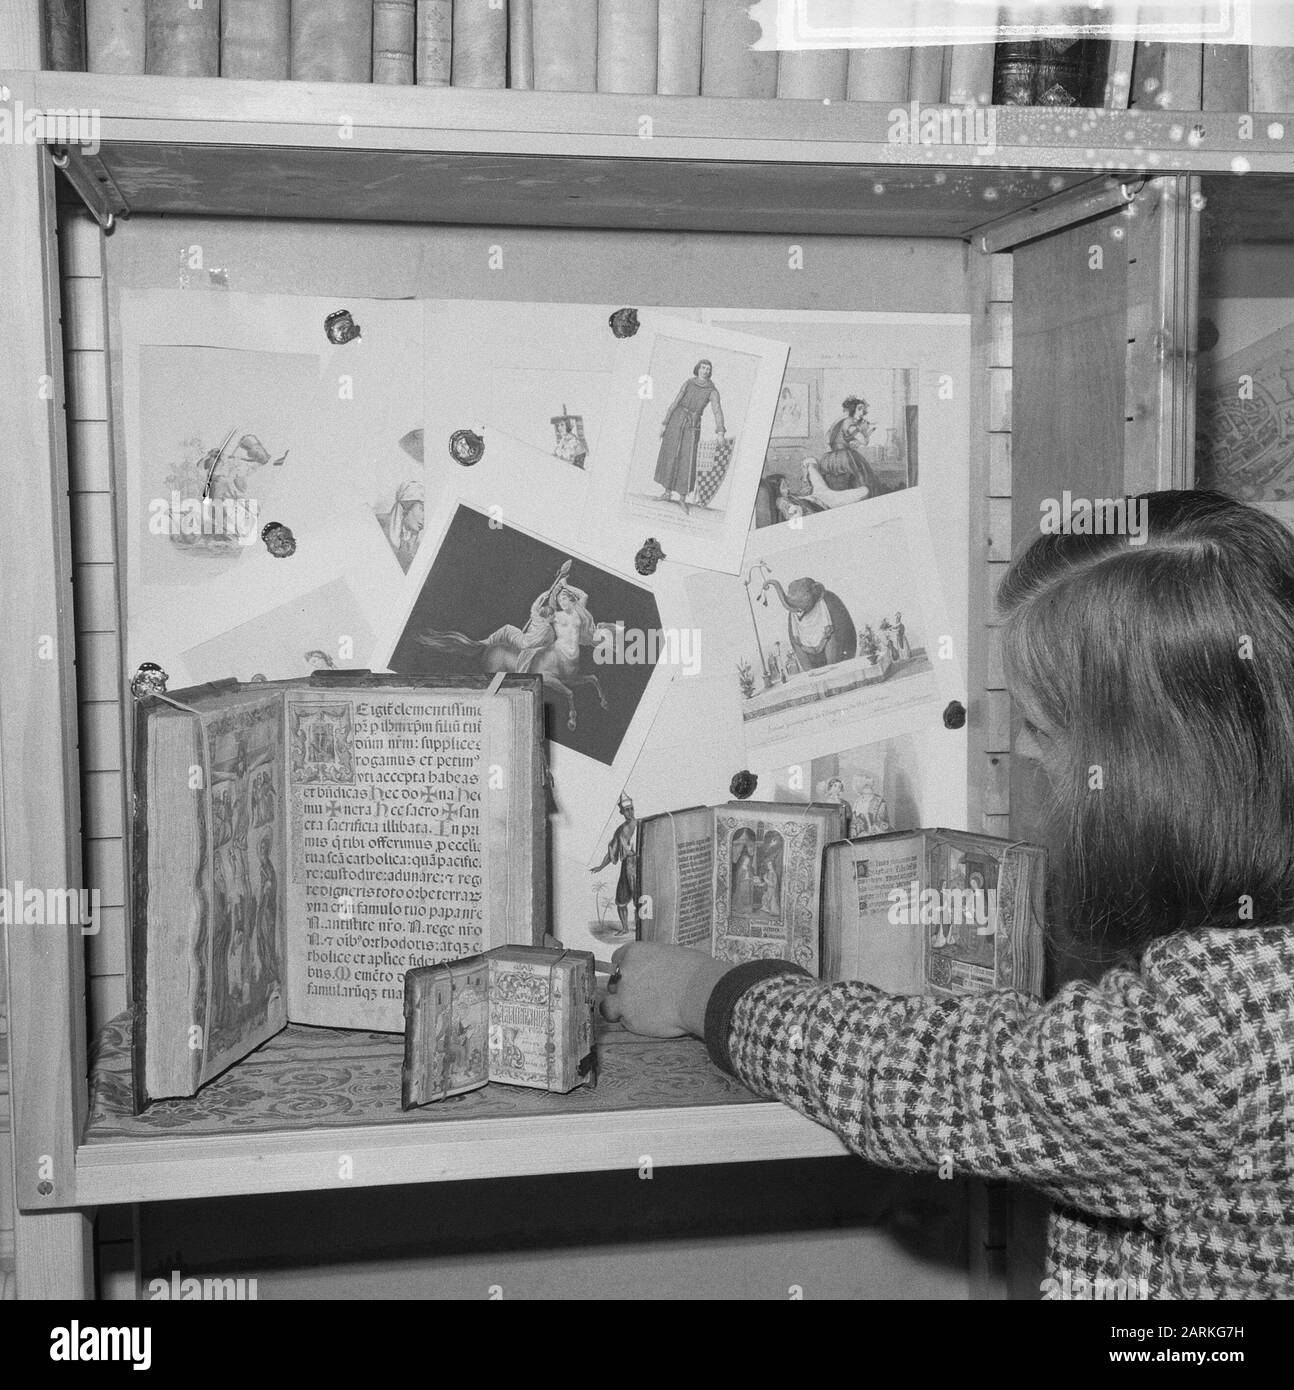 Libros y grabados antiguos de la exposición Fecha: 4 de octubre de 1965 palabras clave: Libros, GRABADOS, exposiciones Foto de stock